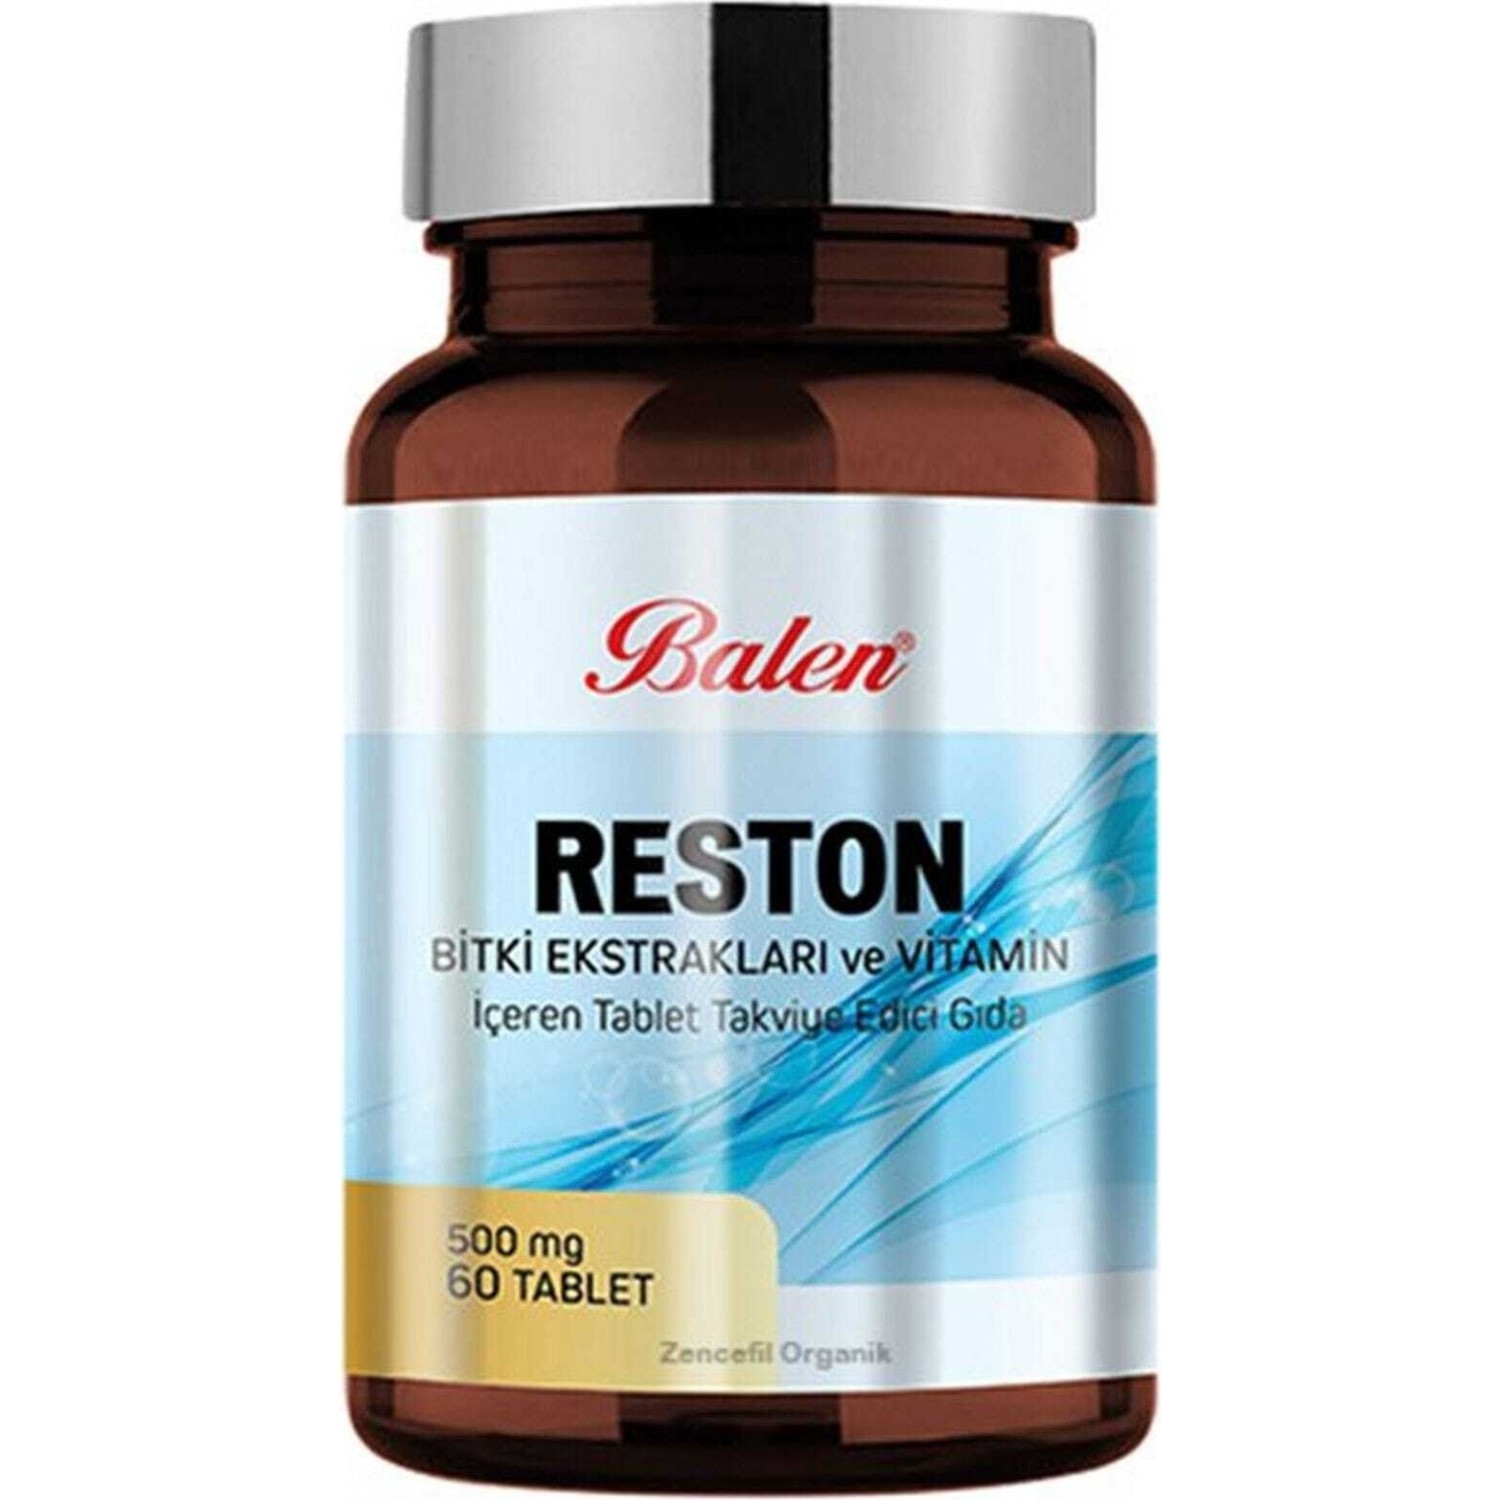 Пищевая добавка Balen Reston 500 мг, 60 капсул пищевая добавка balen reston 500 мг 2 упаковки по 60 капсул